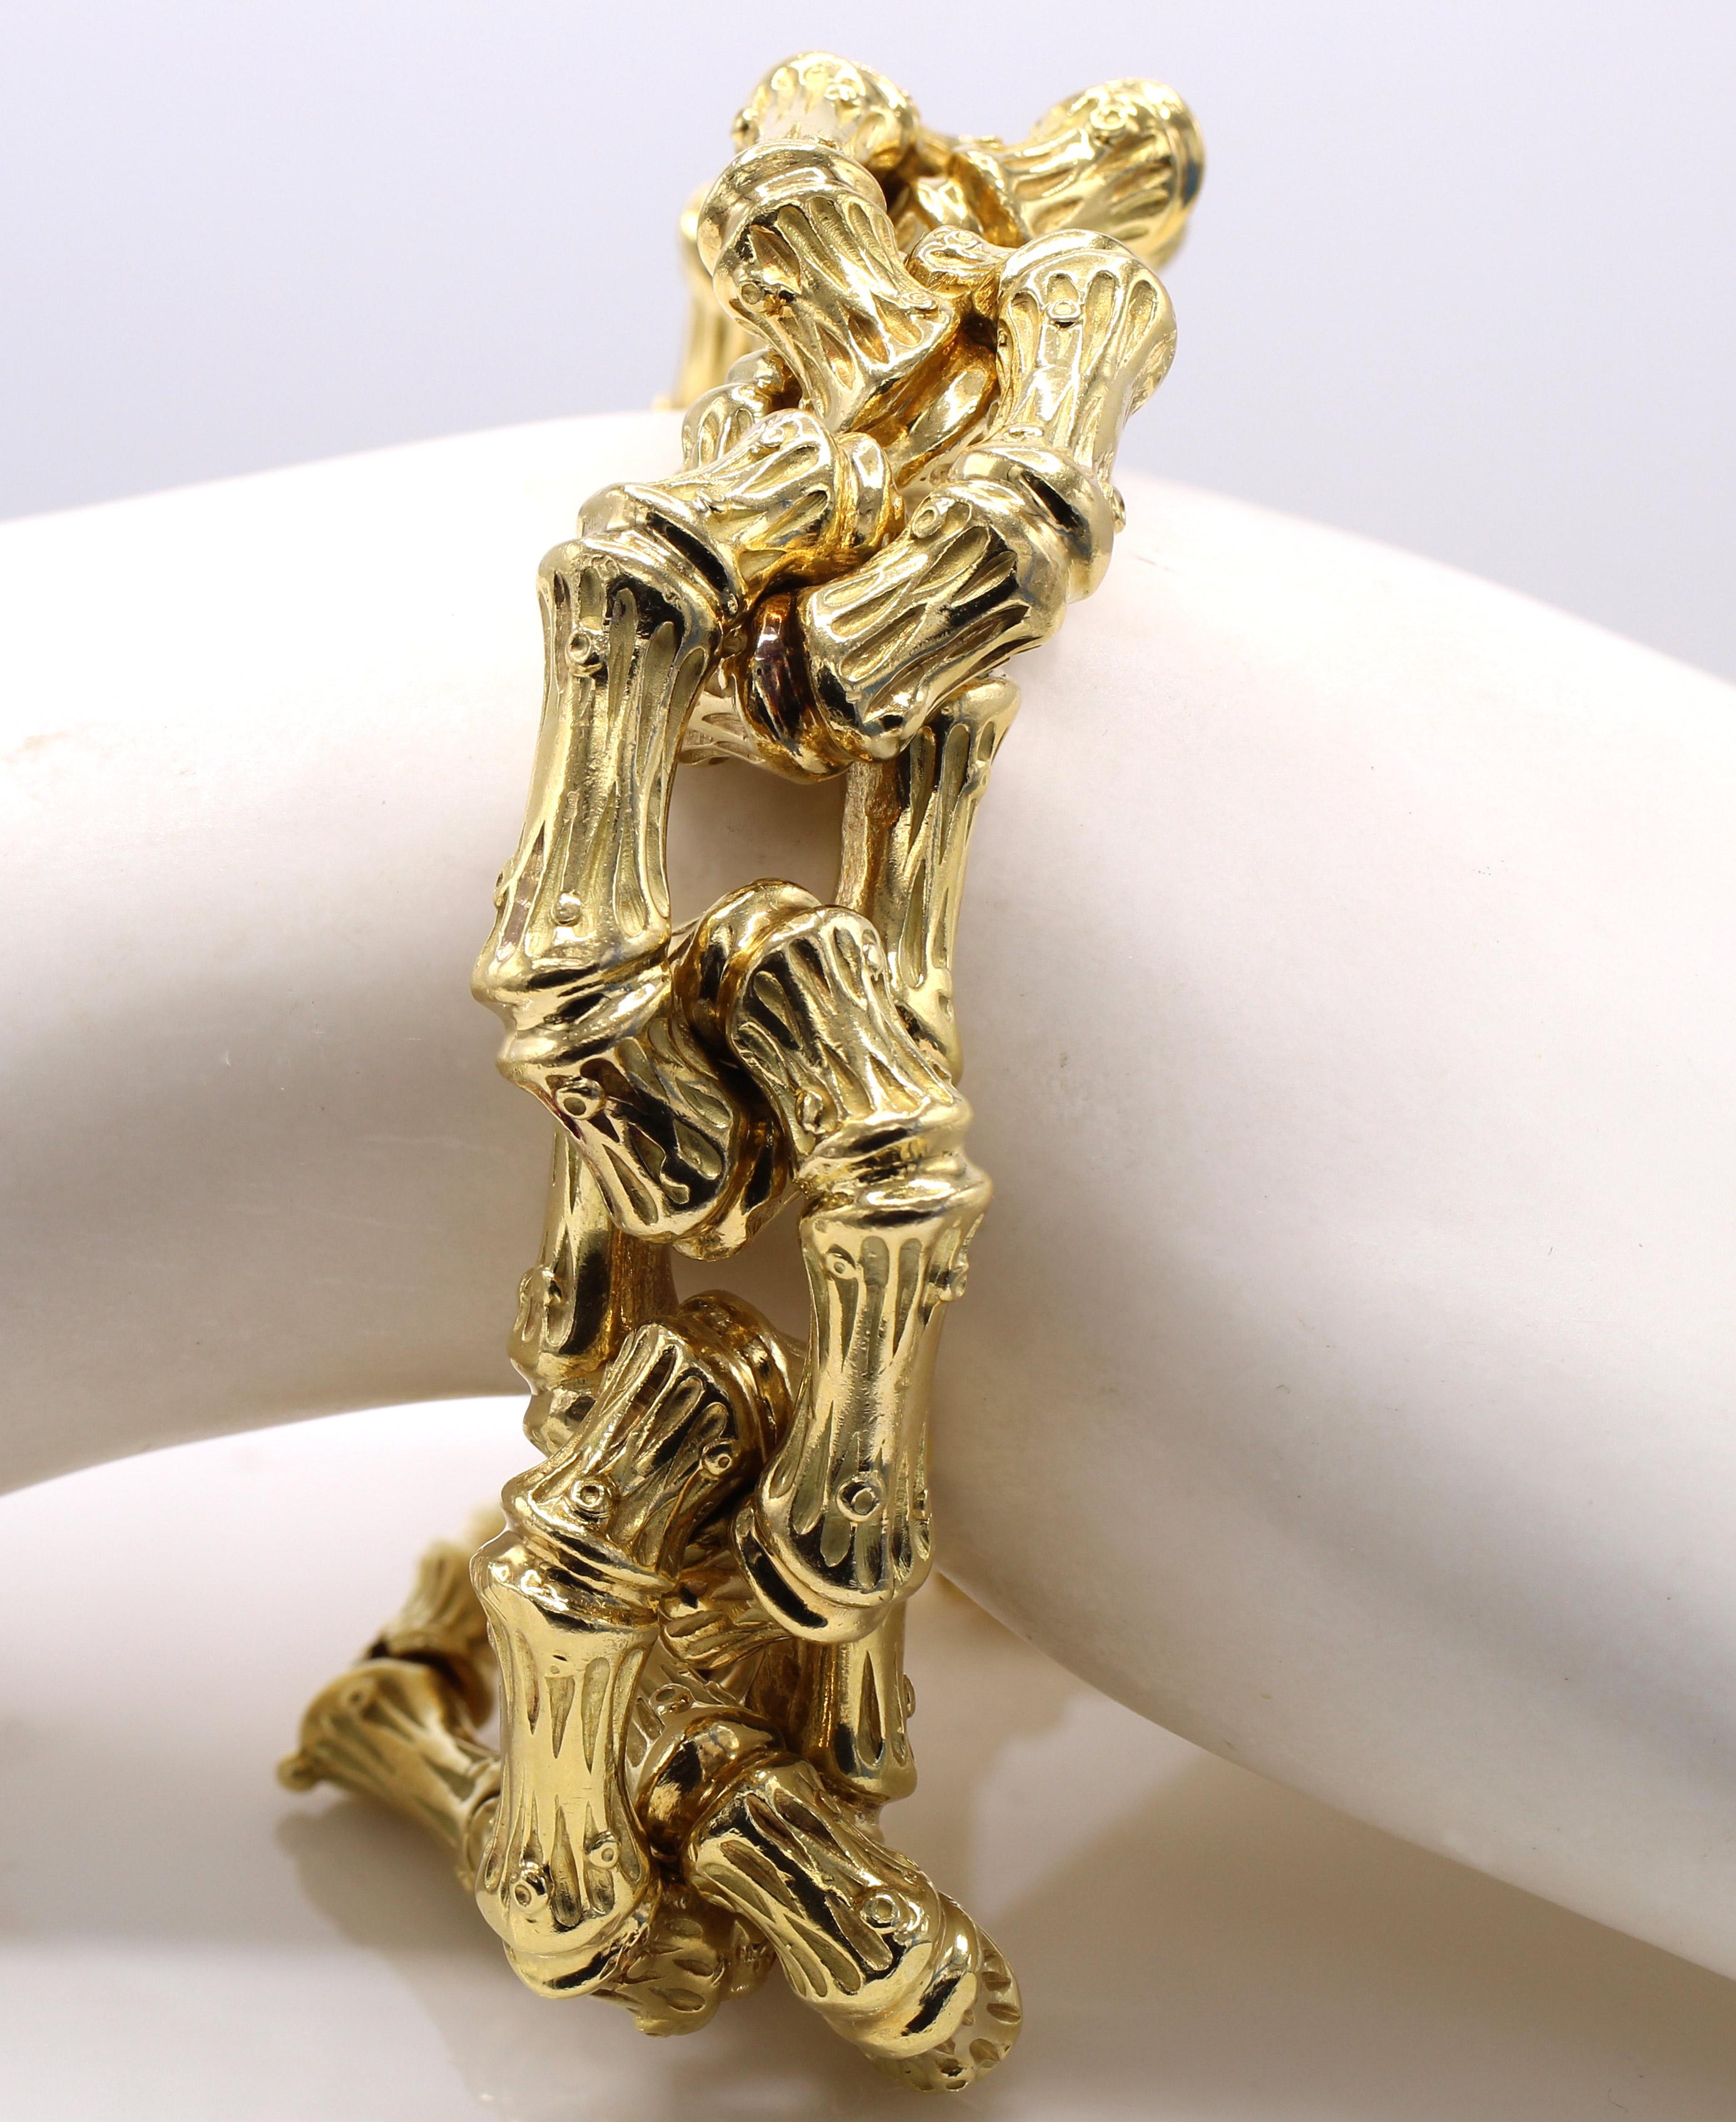 Wunderschönes Design und meisterhafte Handarbeit aus 18 Karat Gelbgold von Verdura. 12 biegsame, rechteckige Glieder im Bambus-Design auf poliertem Gold verleihen diesem Armband aus den 1980er Jahren ein echtes dreidimensionales Aussehen am